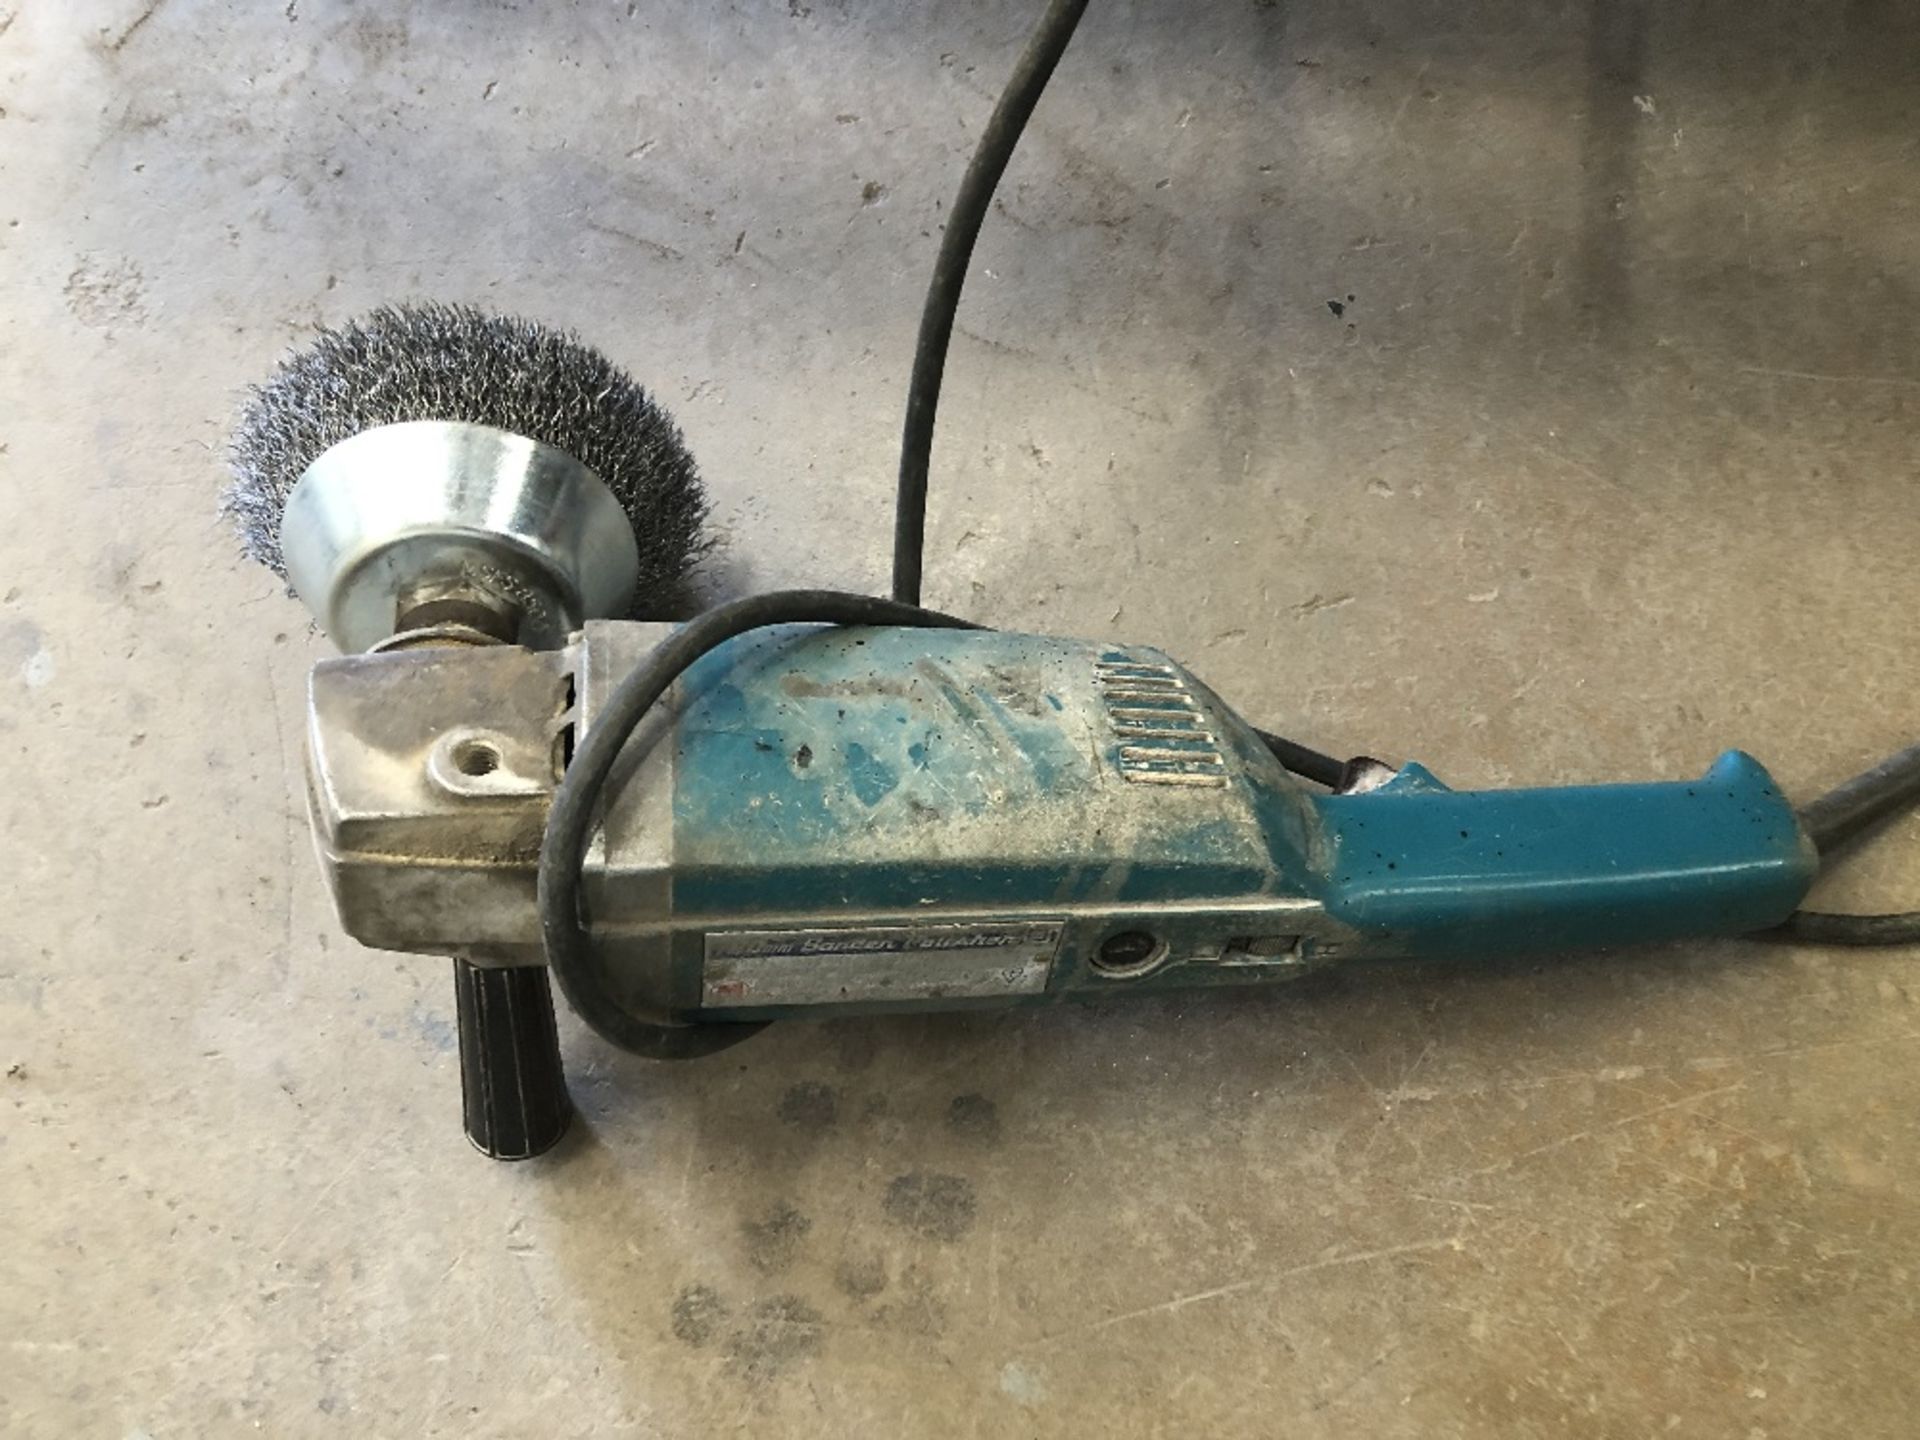 A Makita 2 speed polisher/grinder, 240v.